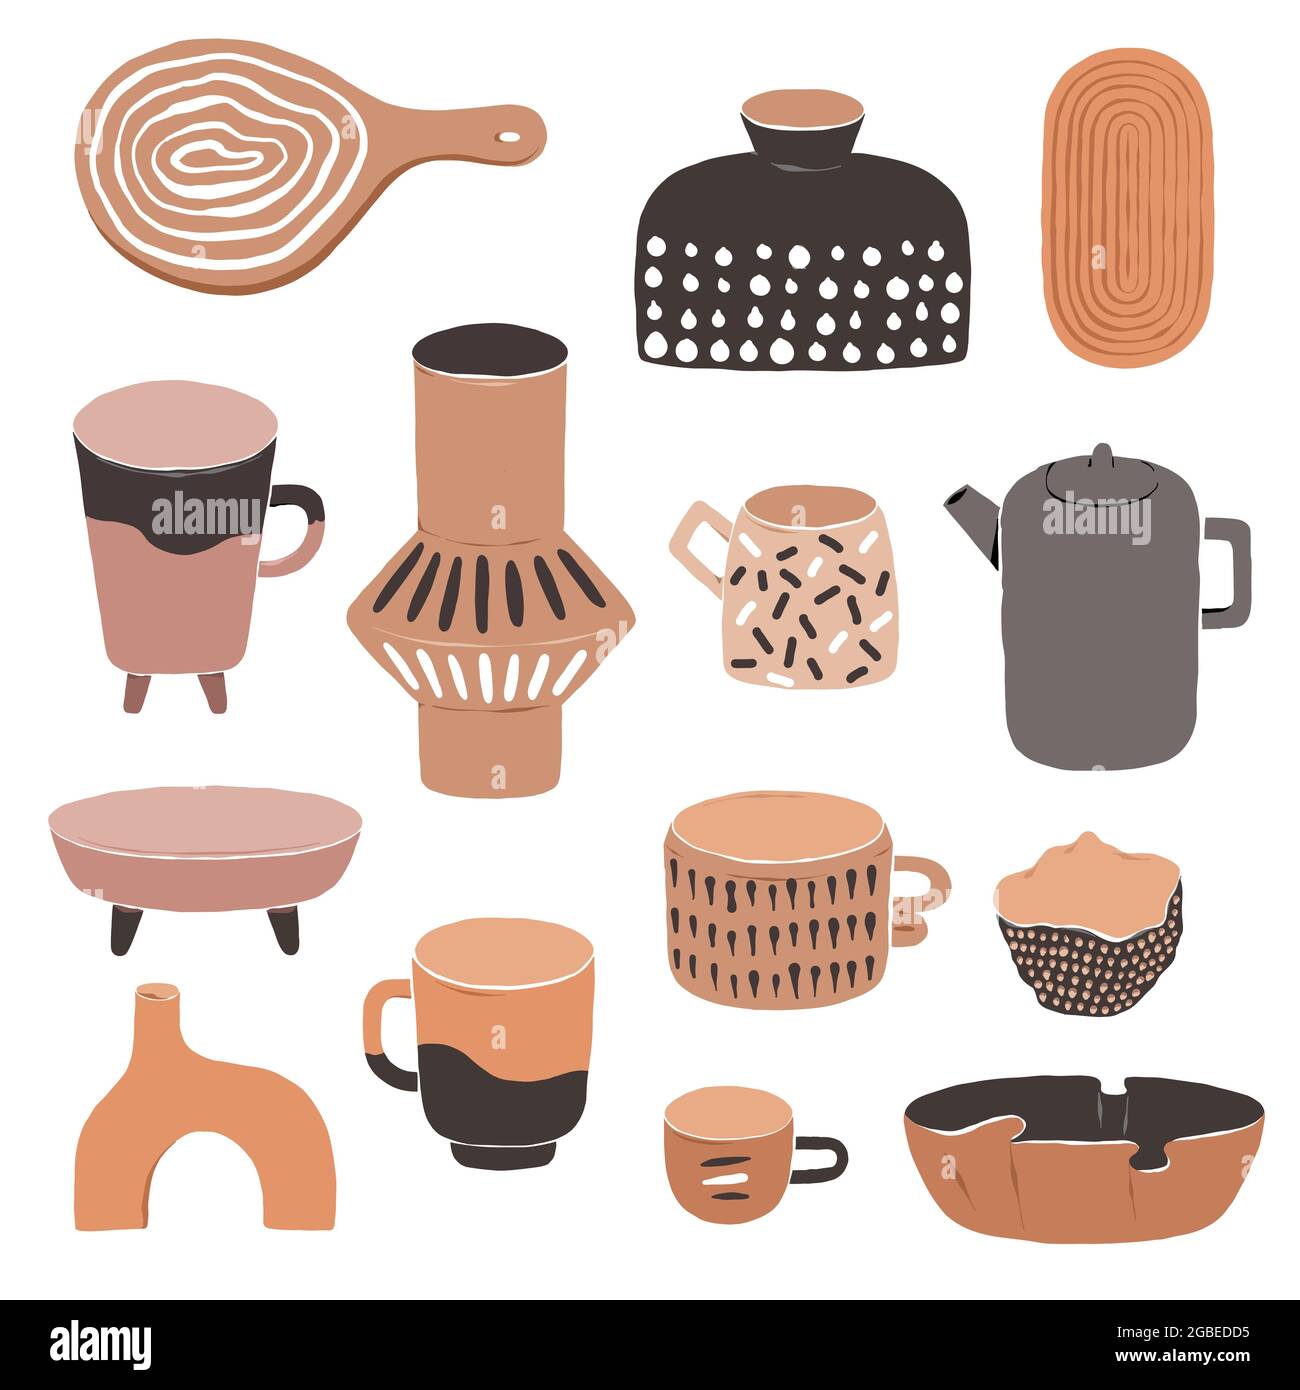 Vari vasi in ceramica moderna, ciotola e tazze in argilla, collezione di ceramiche moderne, disegno artigianale astratto, illustrazione vettoriale piatta set isolato su bianco Illustrazione Vettoriale